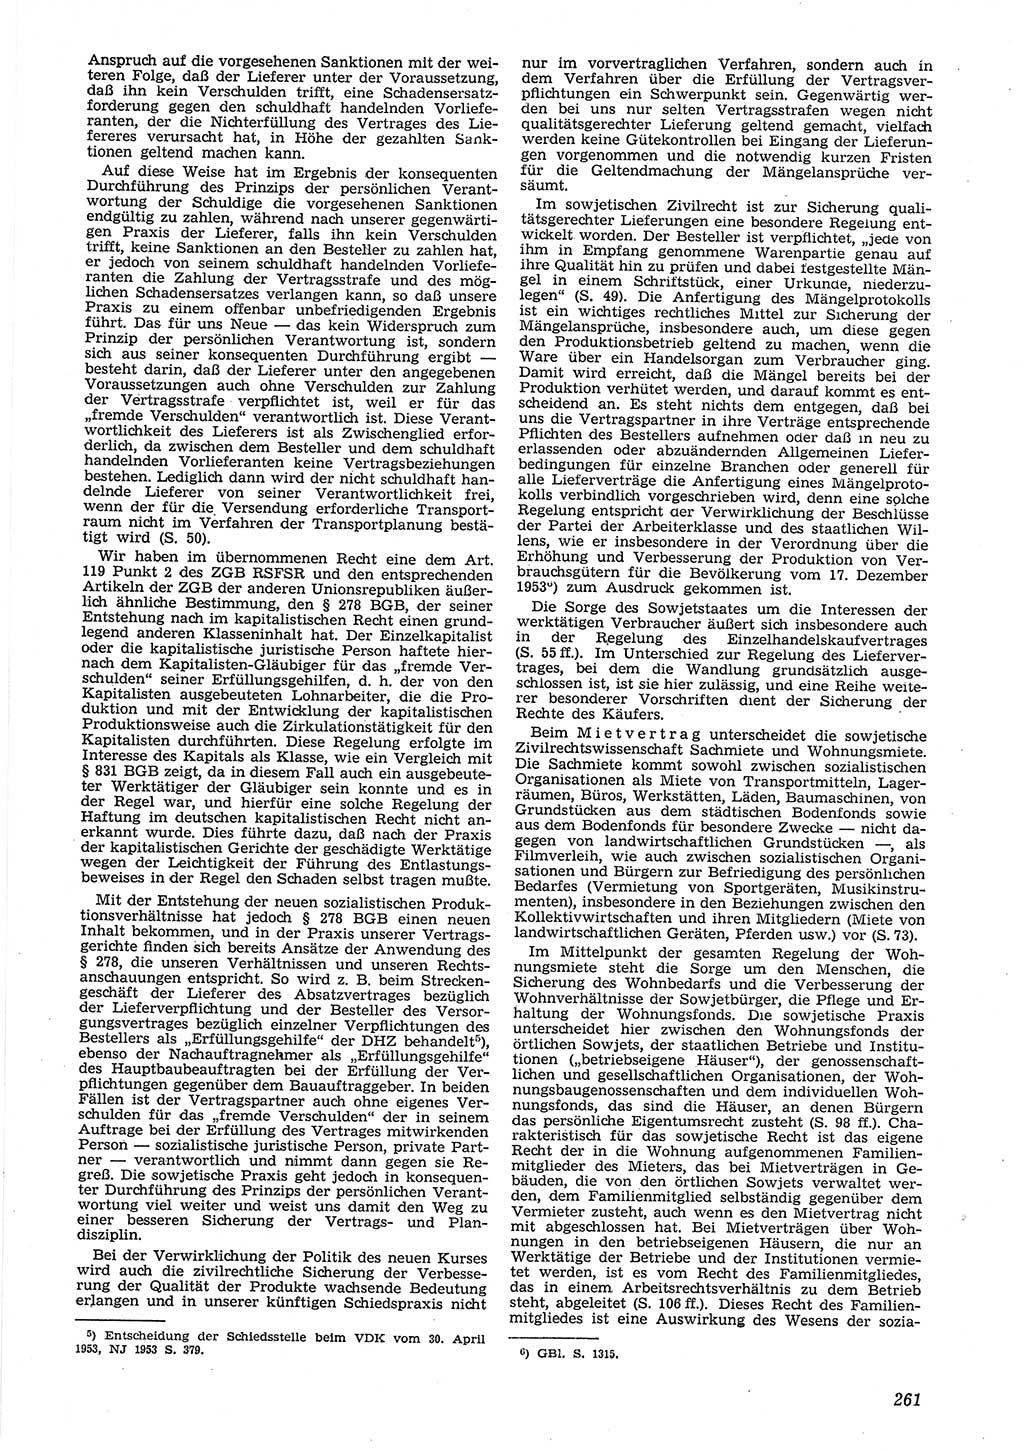 Neue Justiz (NJ), Zeitschrift für Recht und Rechtswissenschaft [Deutsche Demokratische Republik (DDR)], 8. Jahrgang 1954, Seite 261 (NJ DDR 1954, S. 261)